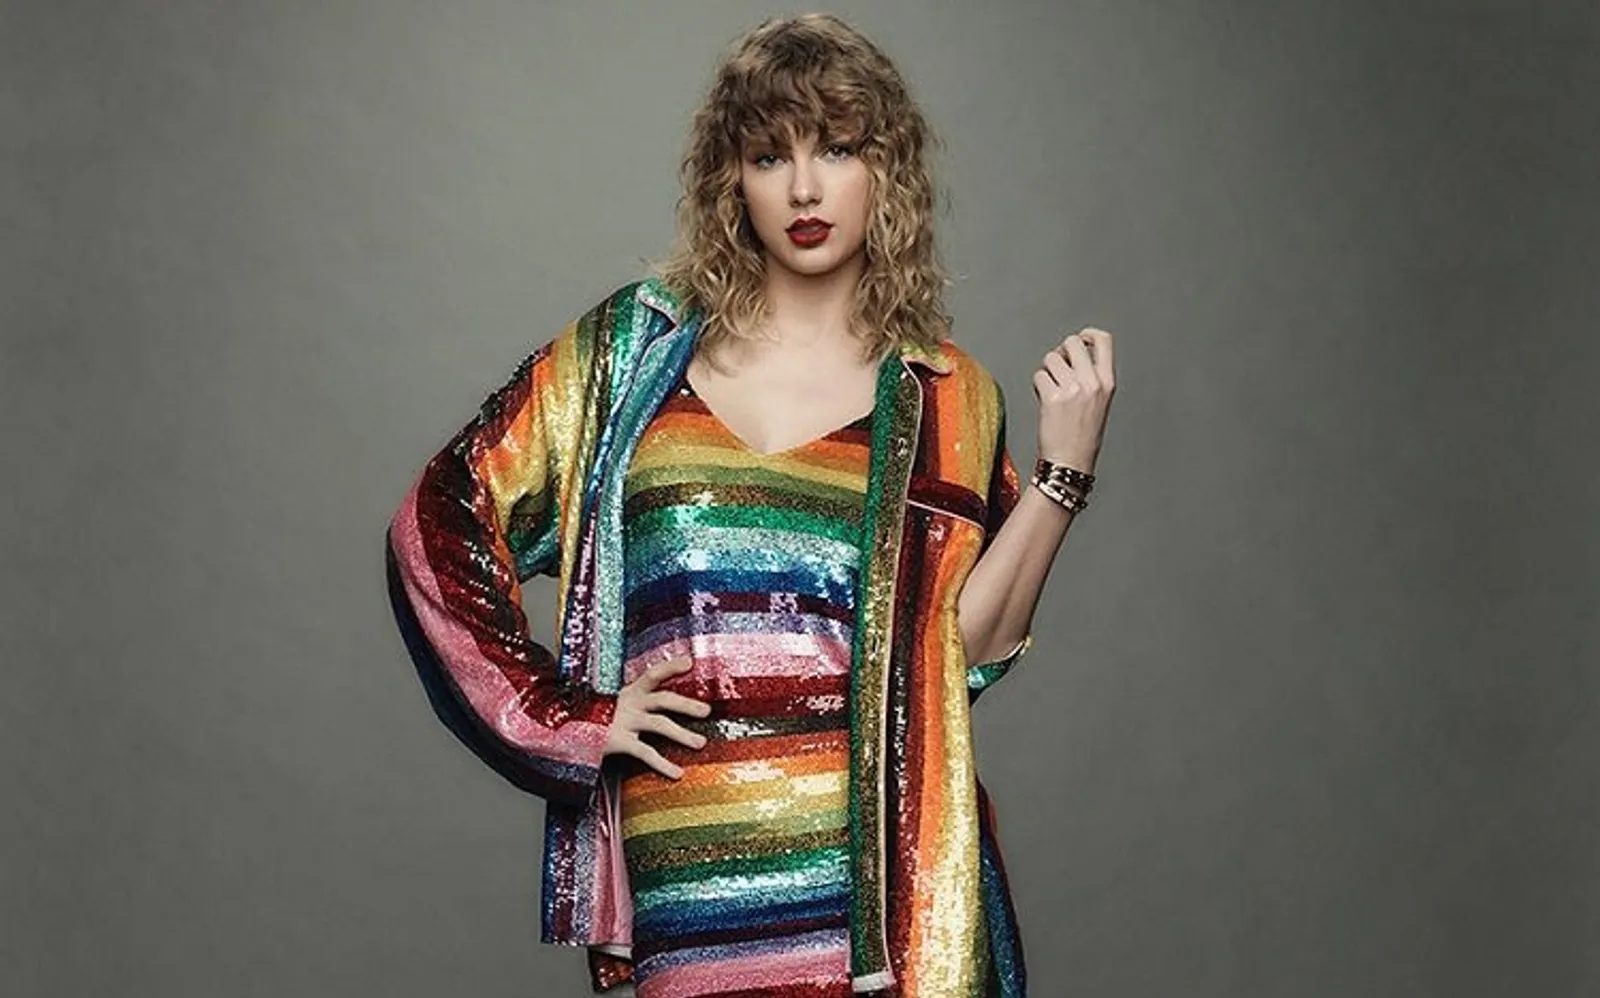 Majalah Time Pilih Taylor Swift Masuk Daftar Tokoh Tahun Ini, Kok Bisa?